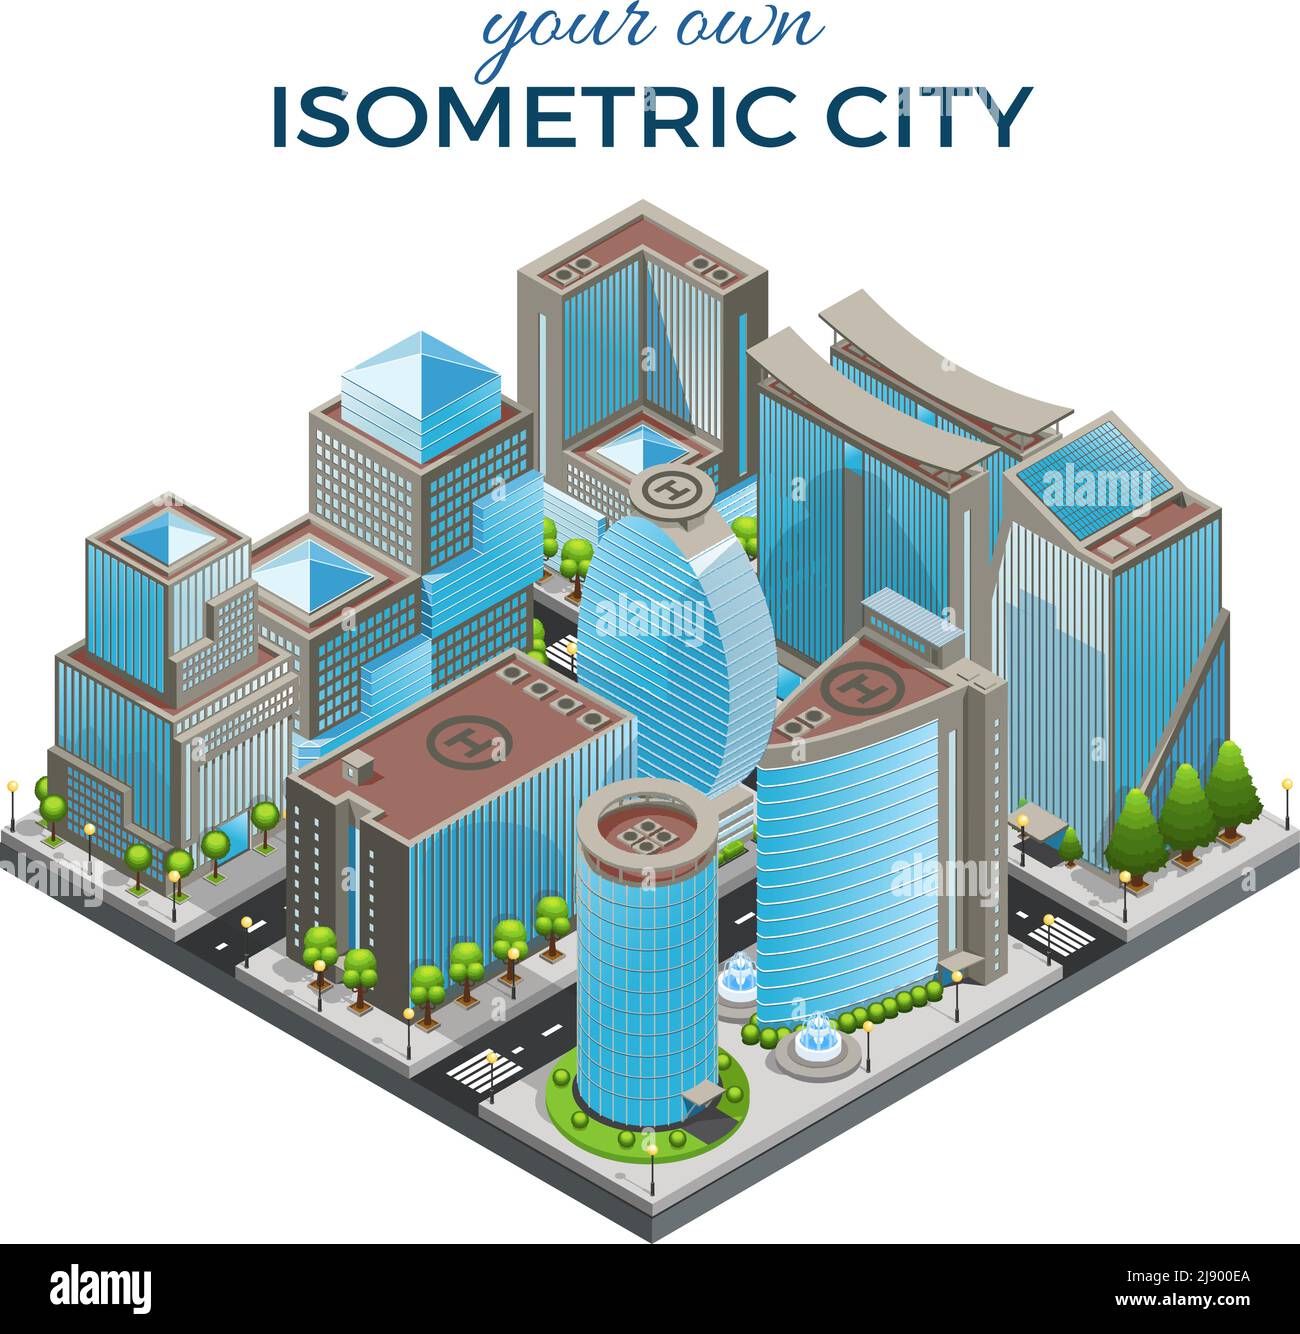 Modèle de paysage urbain moderne isométrique avec immeubles de bureaux de différentes formes illustration vectorielle isolée des fontaines des arbres routiers Illustration de Vecteur